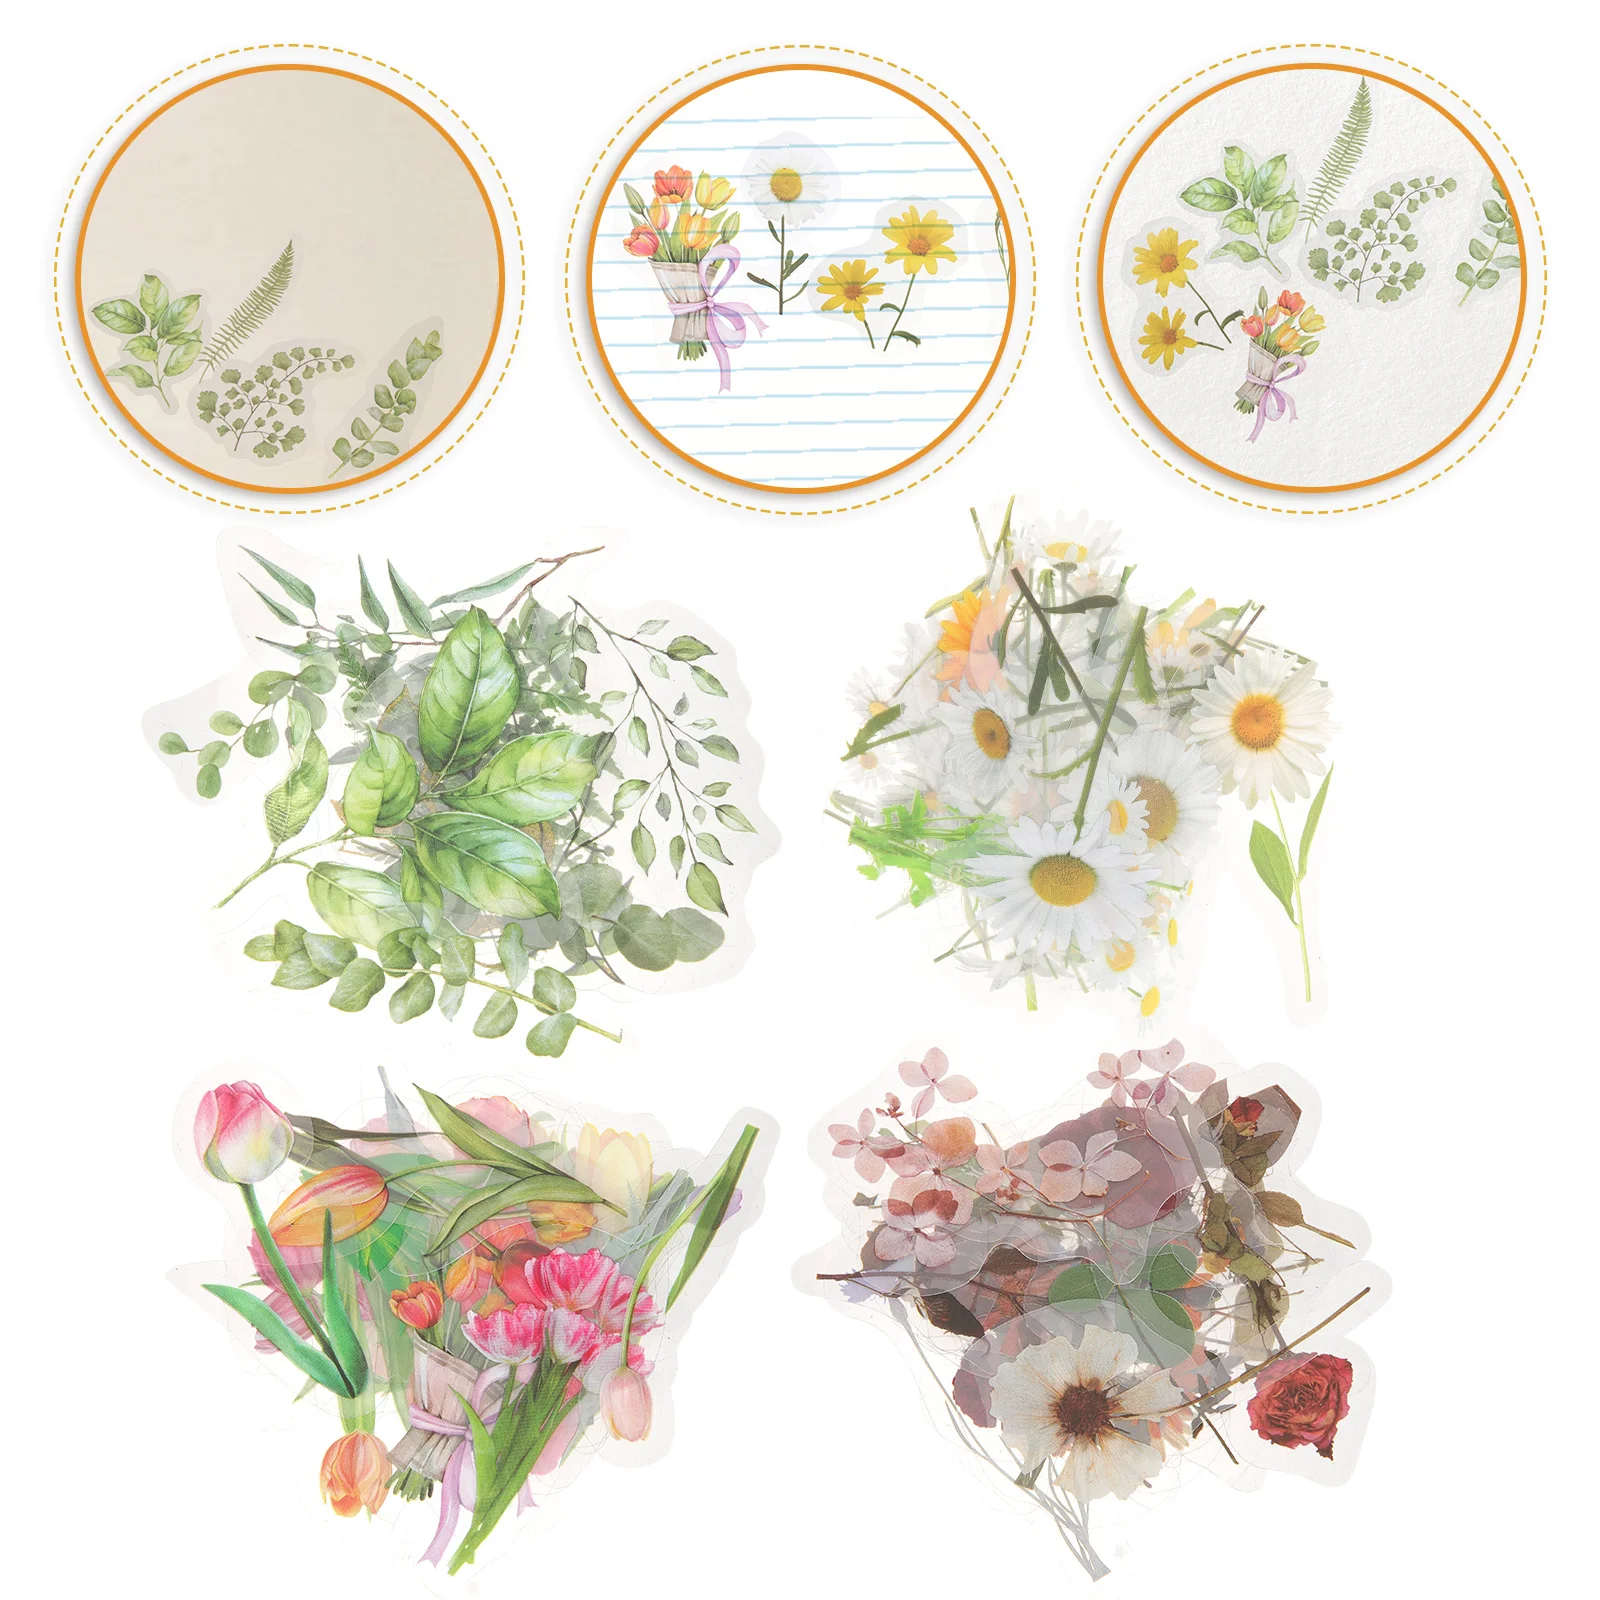 

160 Pcs Pet Stickers DIY Diary Flower Series Scrapbooking Applique Floral Vintage Pretty